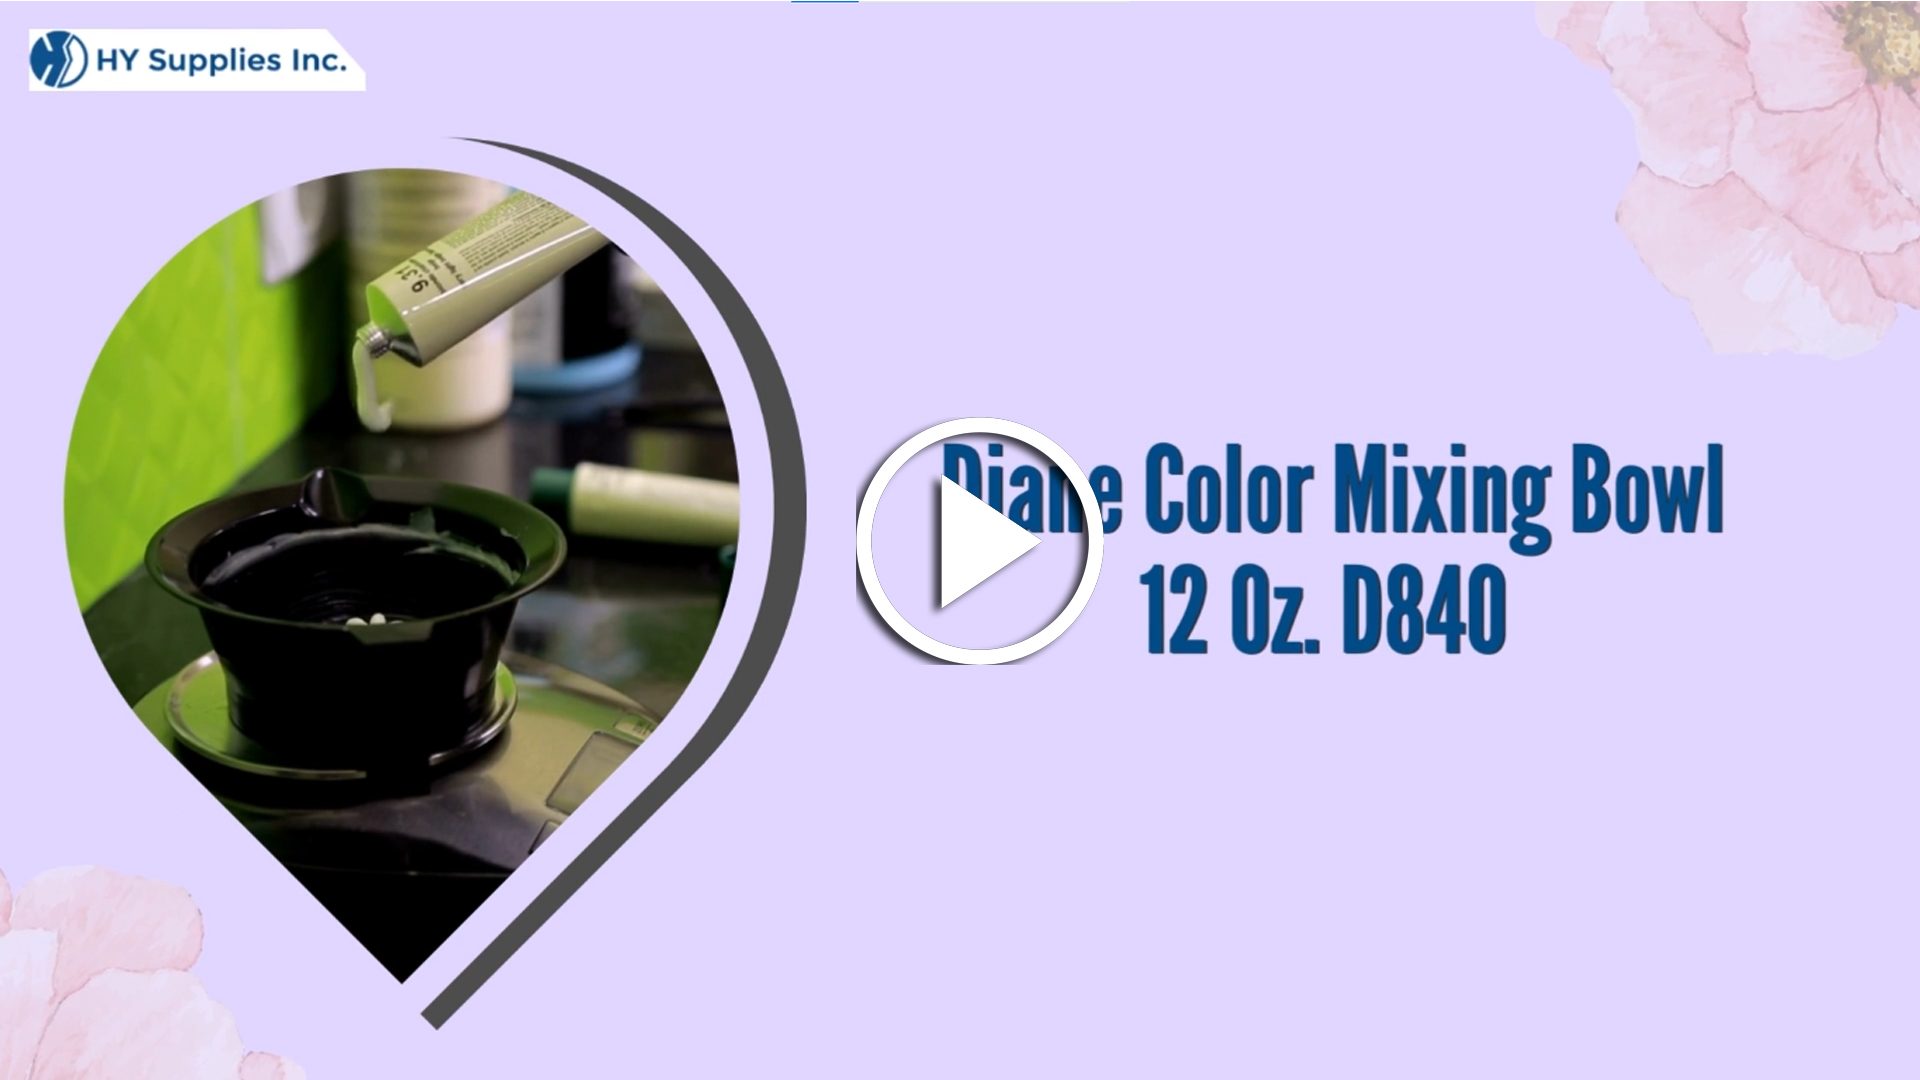 Diane Color Mixing Bowl 12Oz -D840 